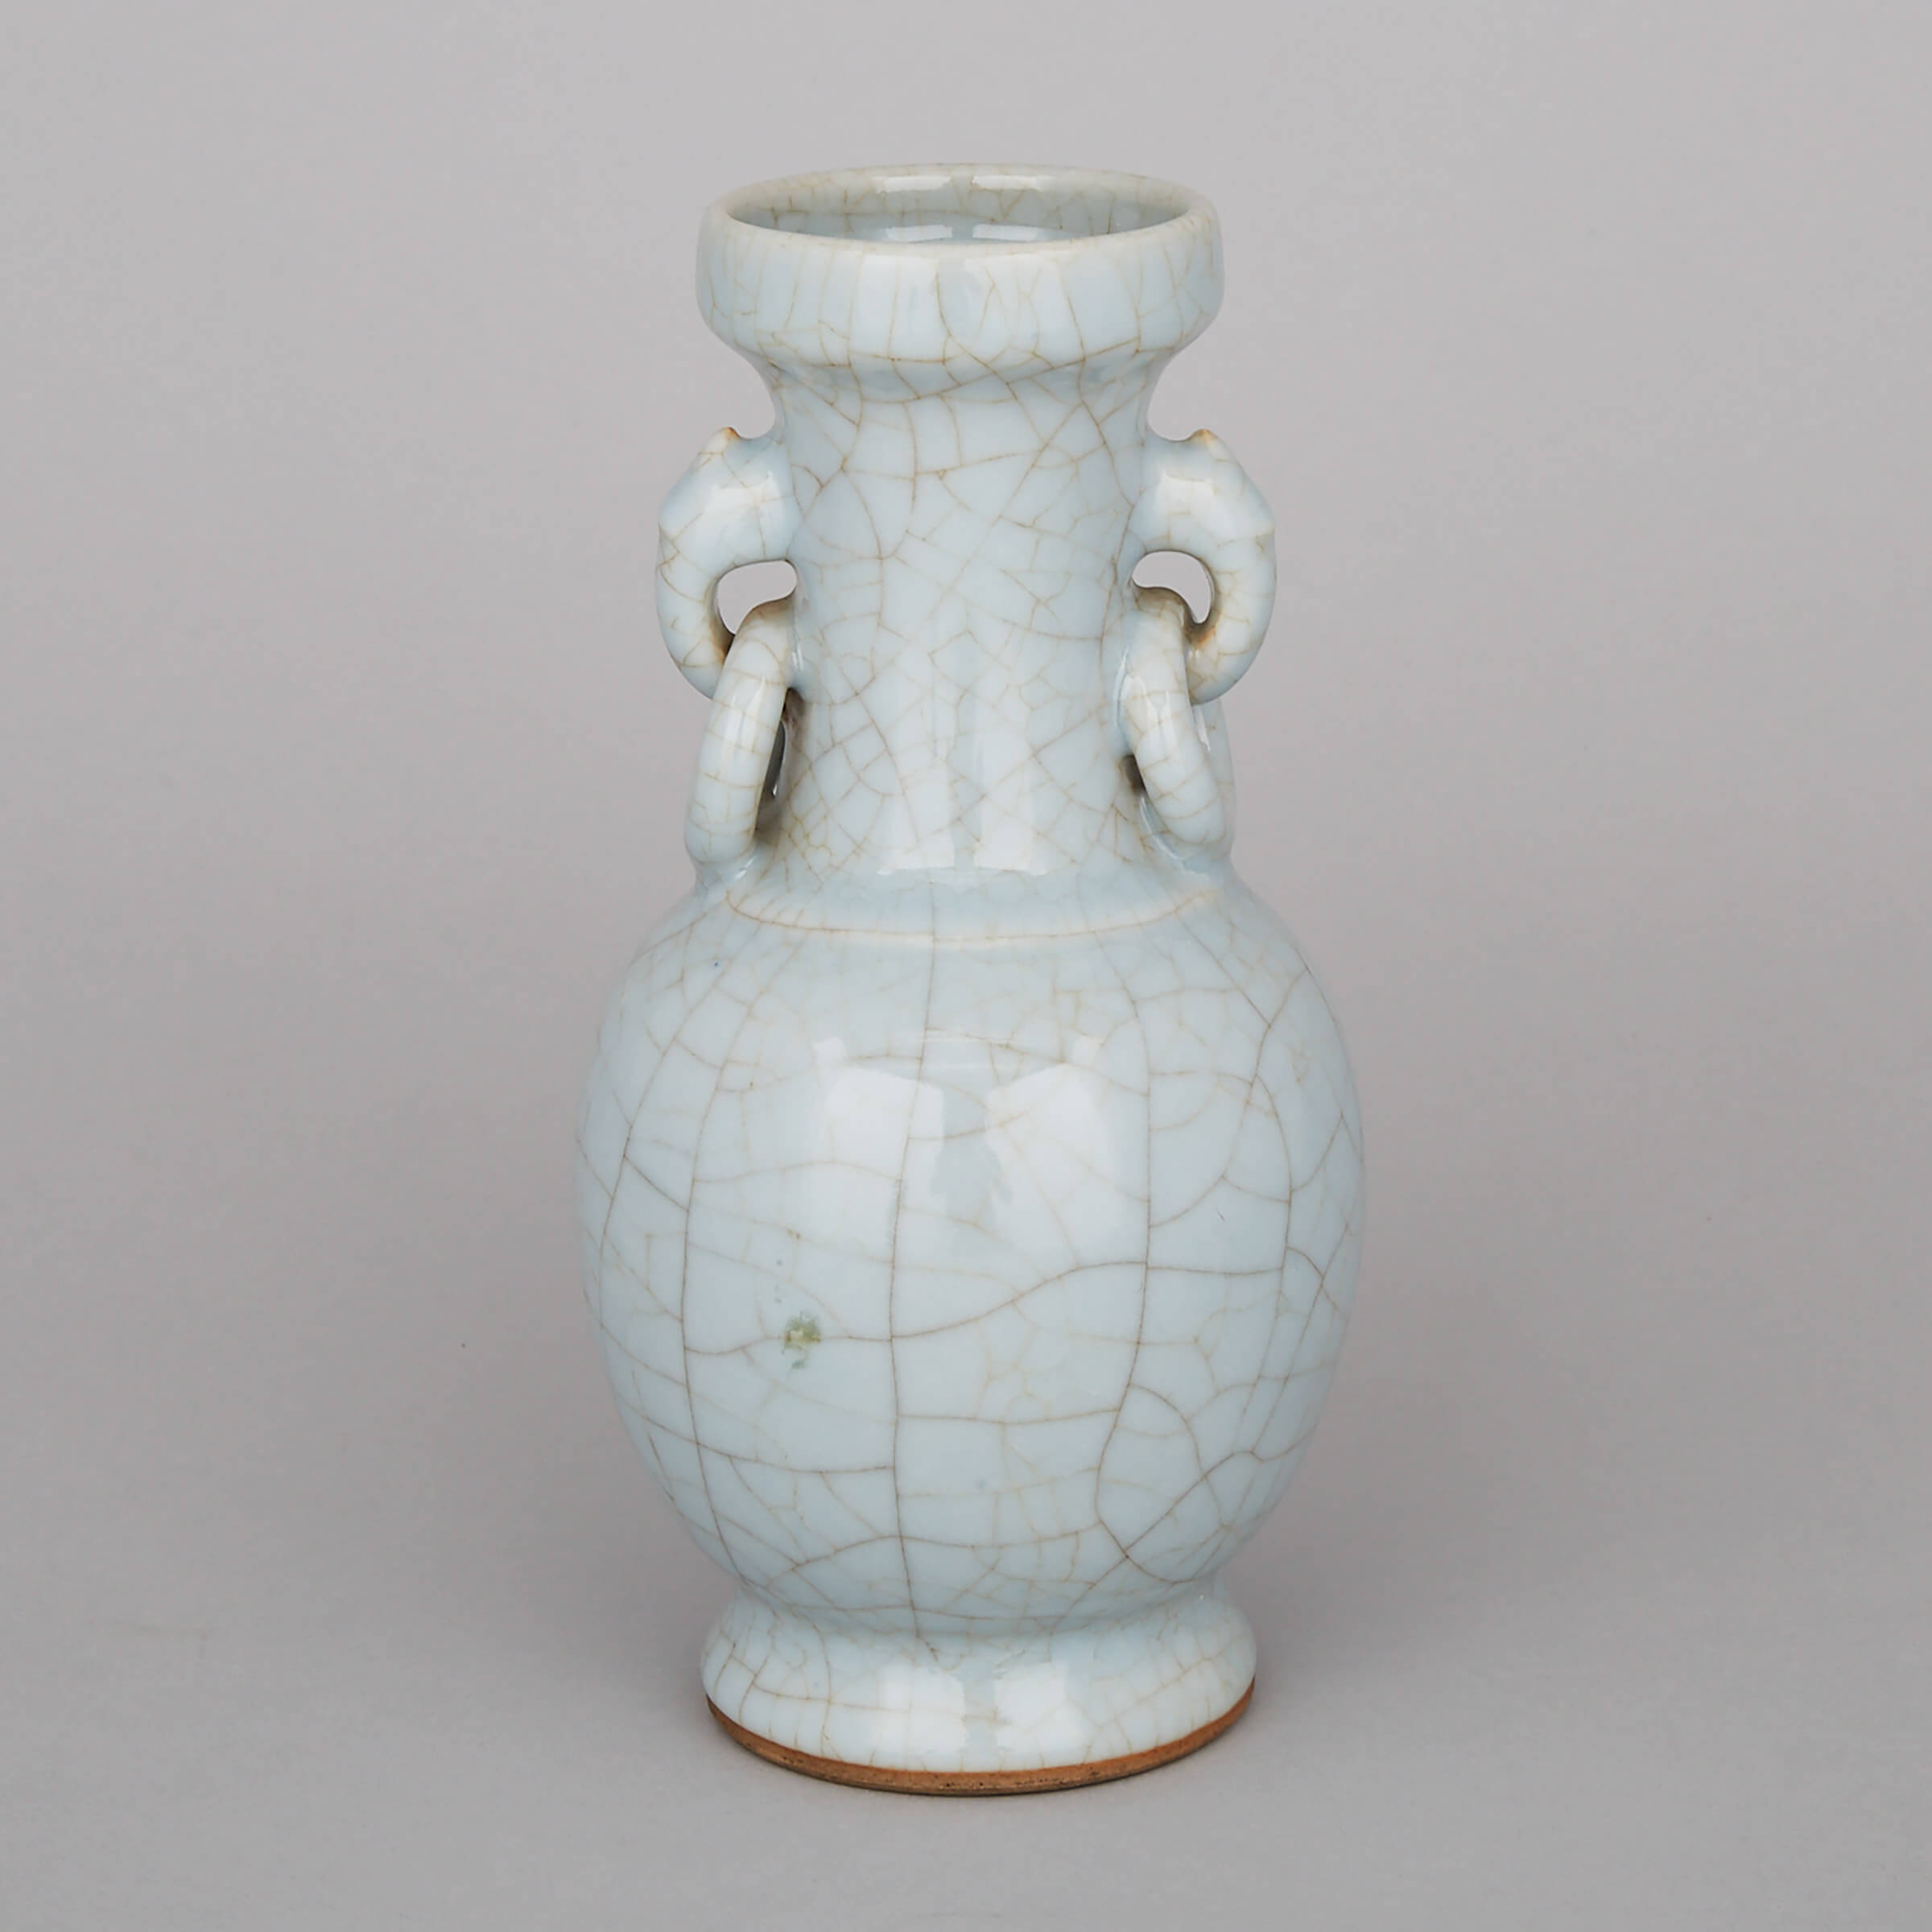 A Crackled Glaze Vase